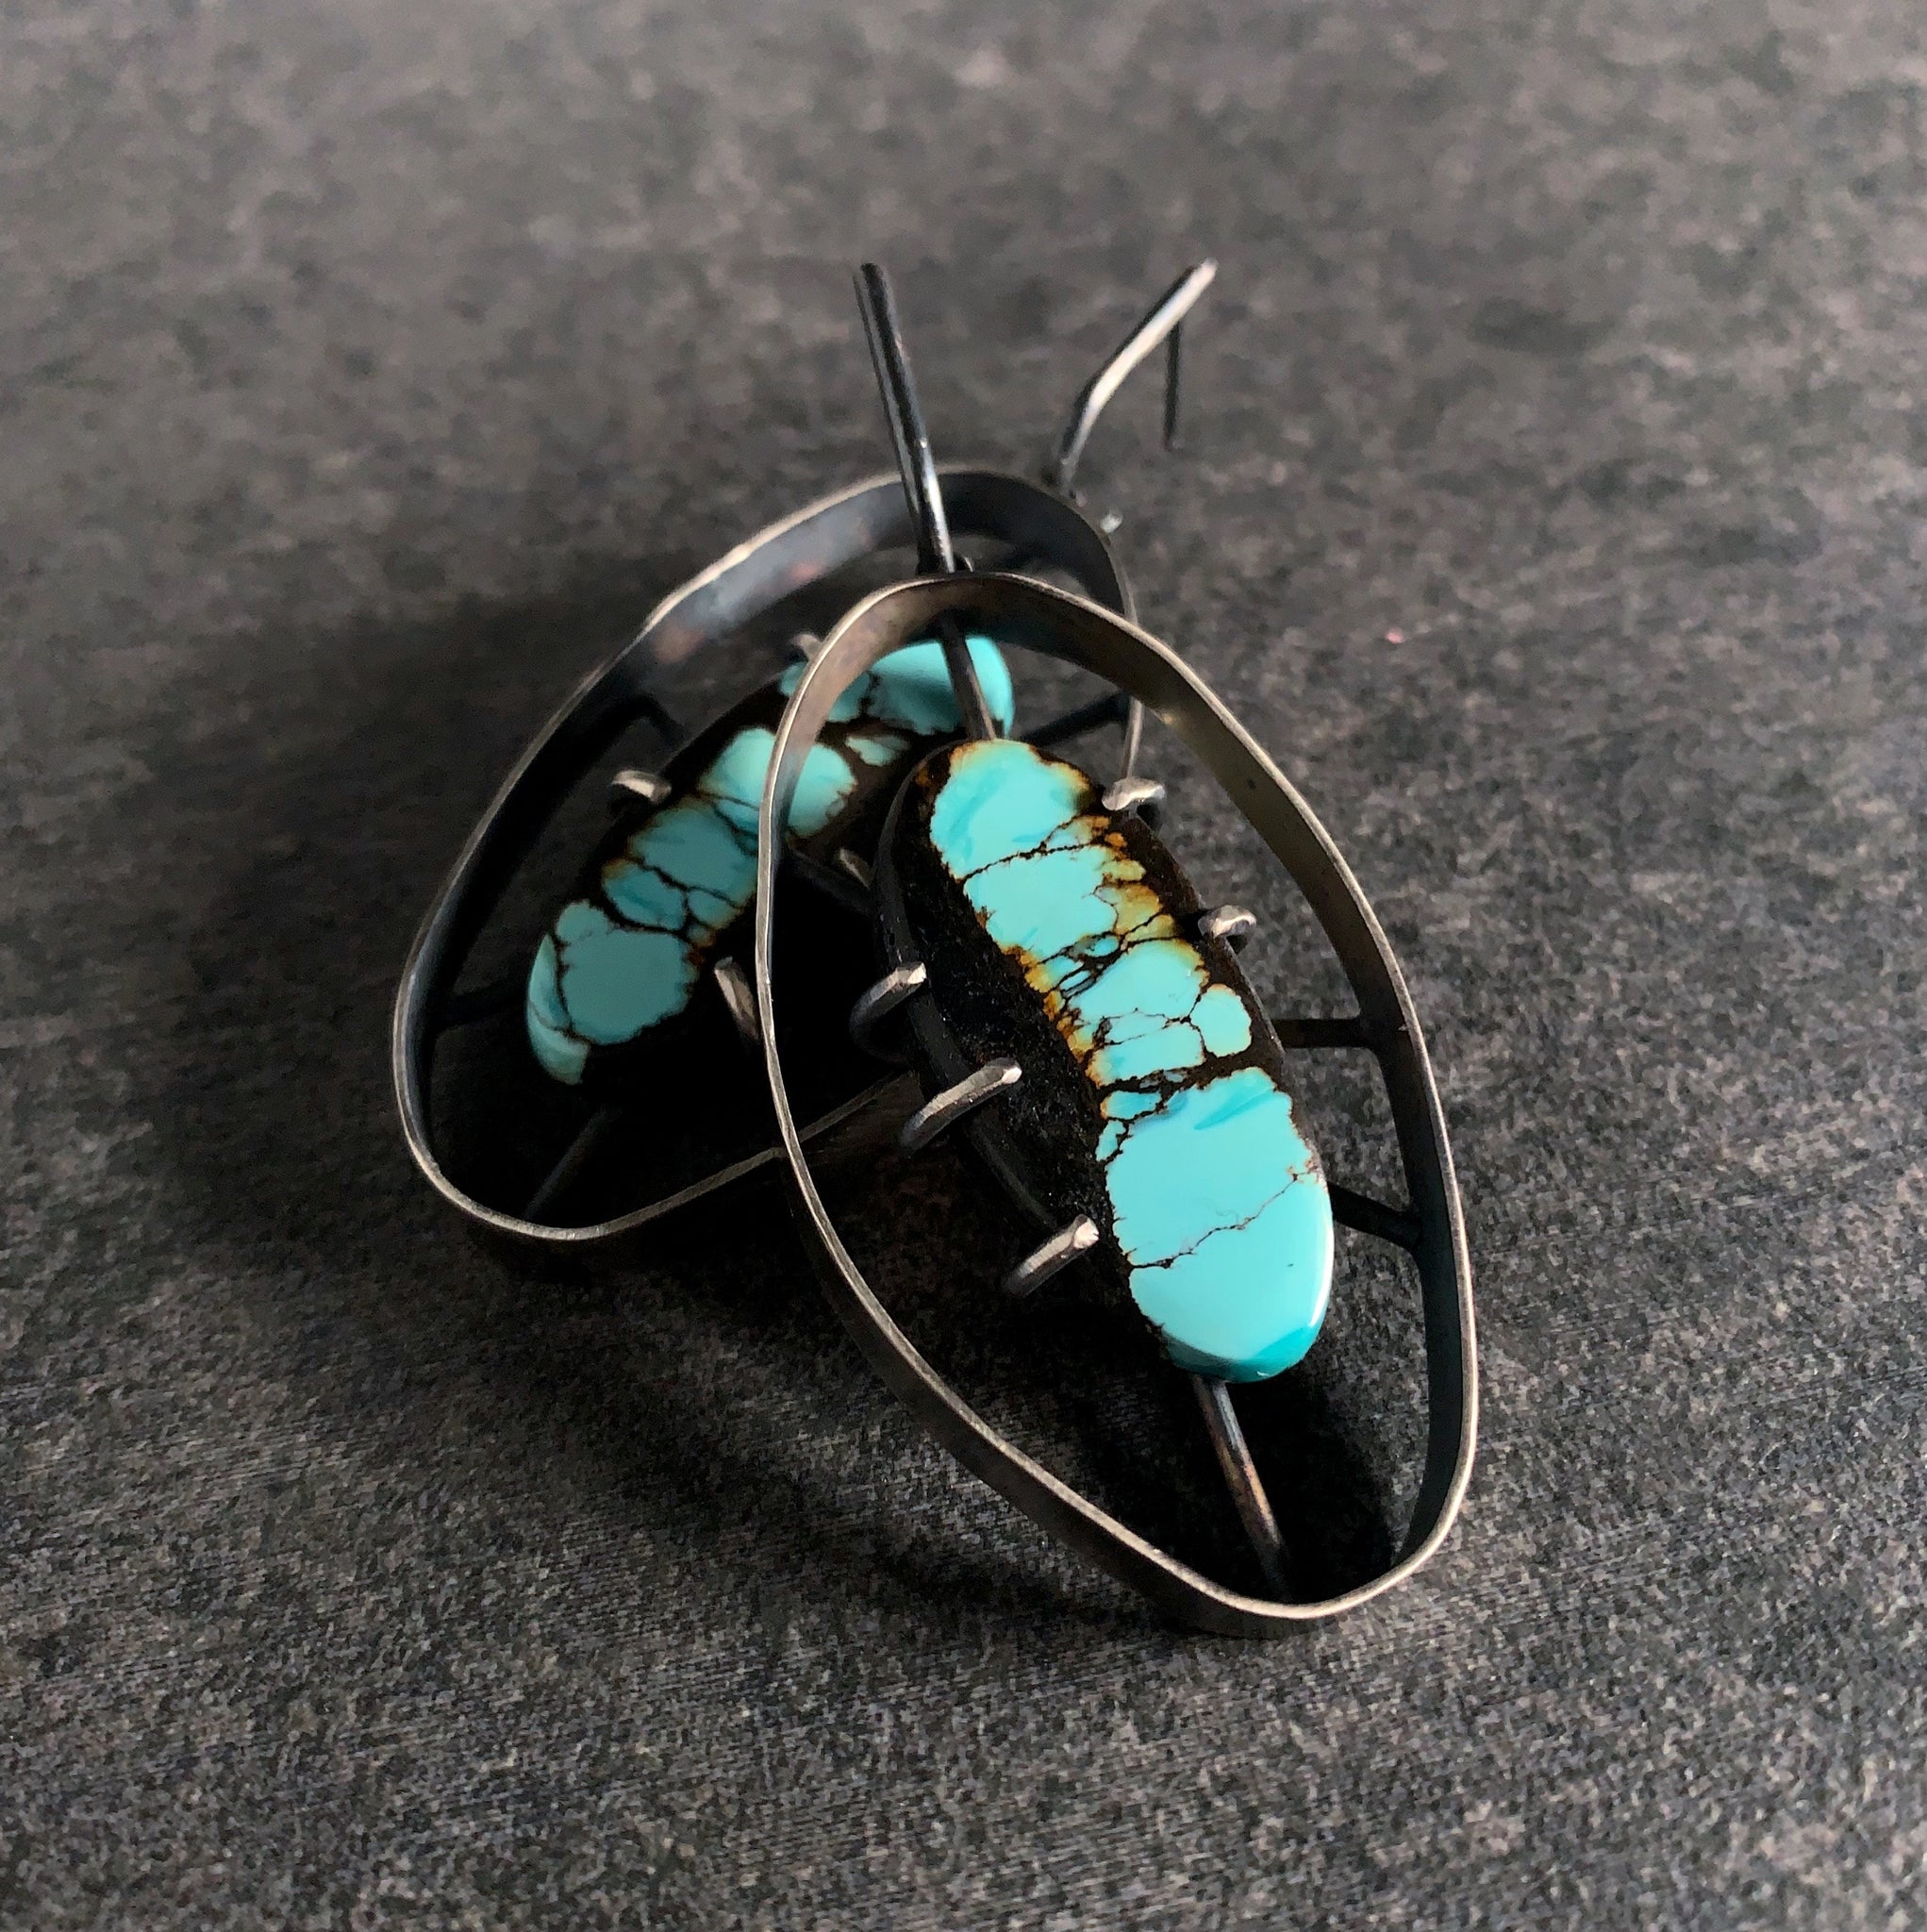 Wayfinder Earrings no. 2 - Bao Canyon Turquoise